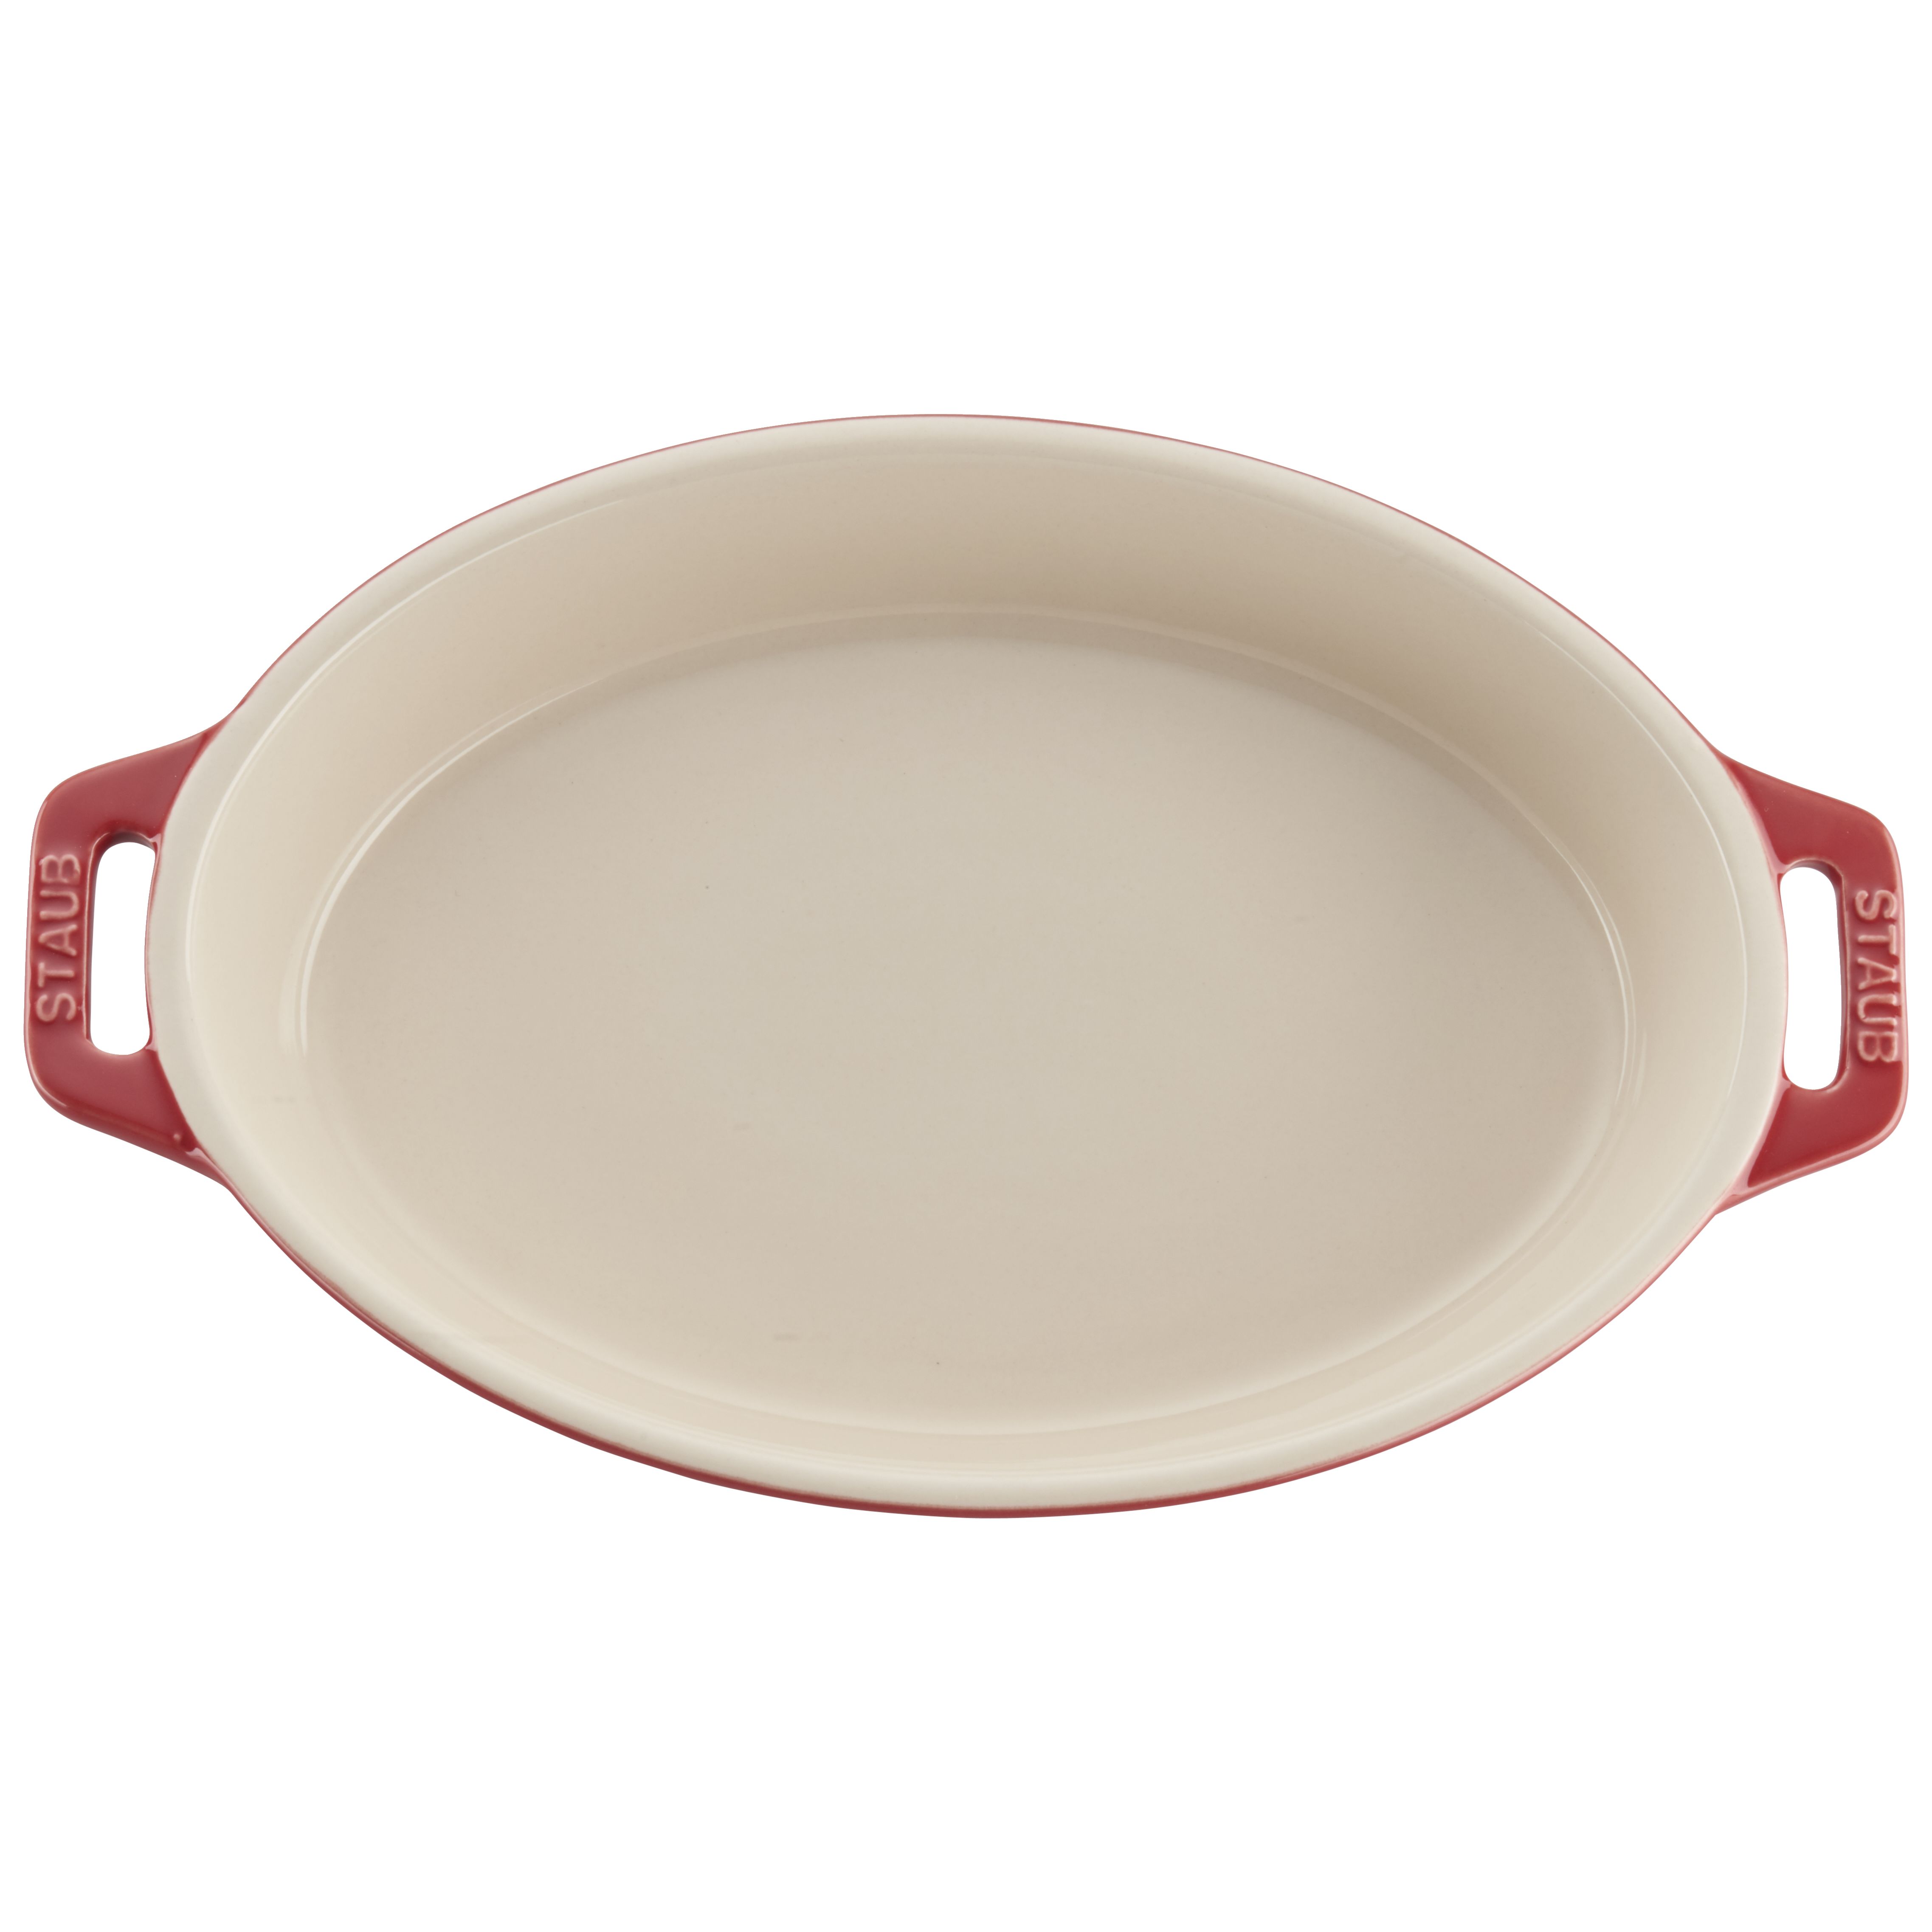 Staub Oval Dish, White, 4.2 qt. - White